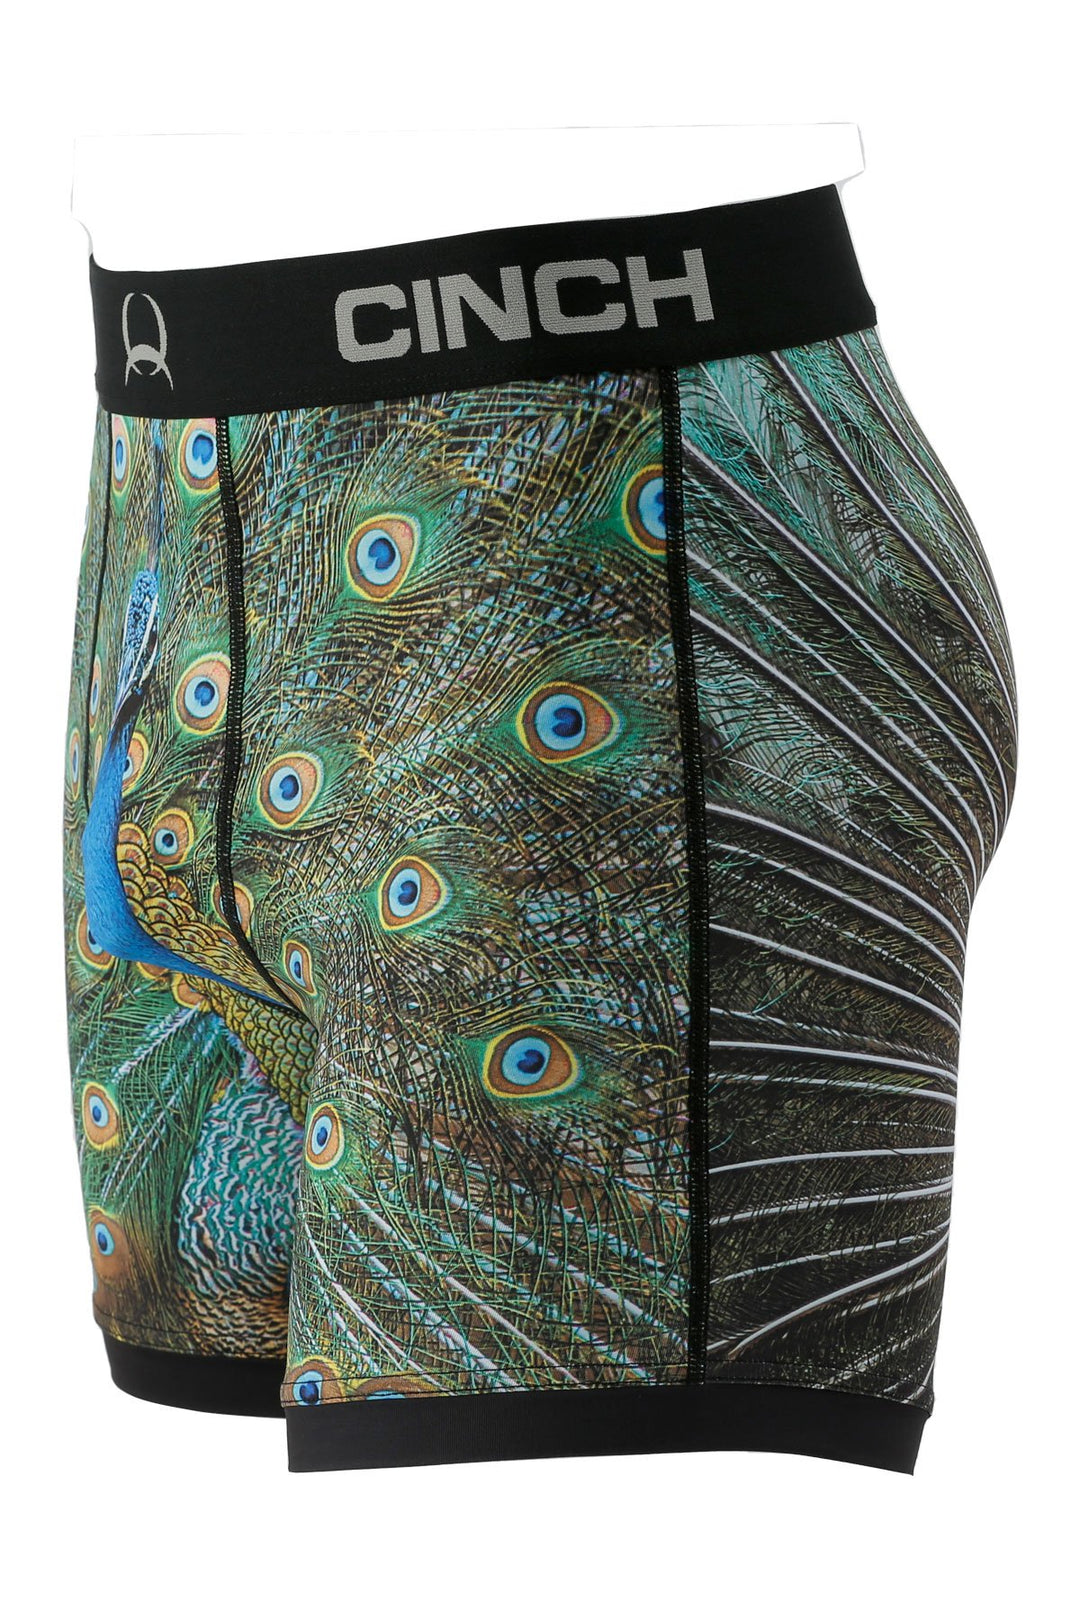 Cinch - Mens 9" Boxer Briefs Peacock